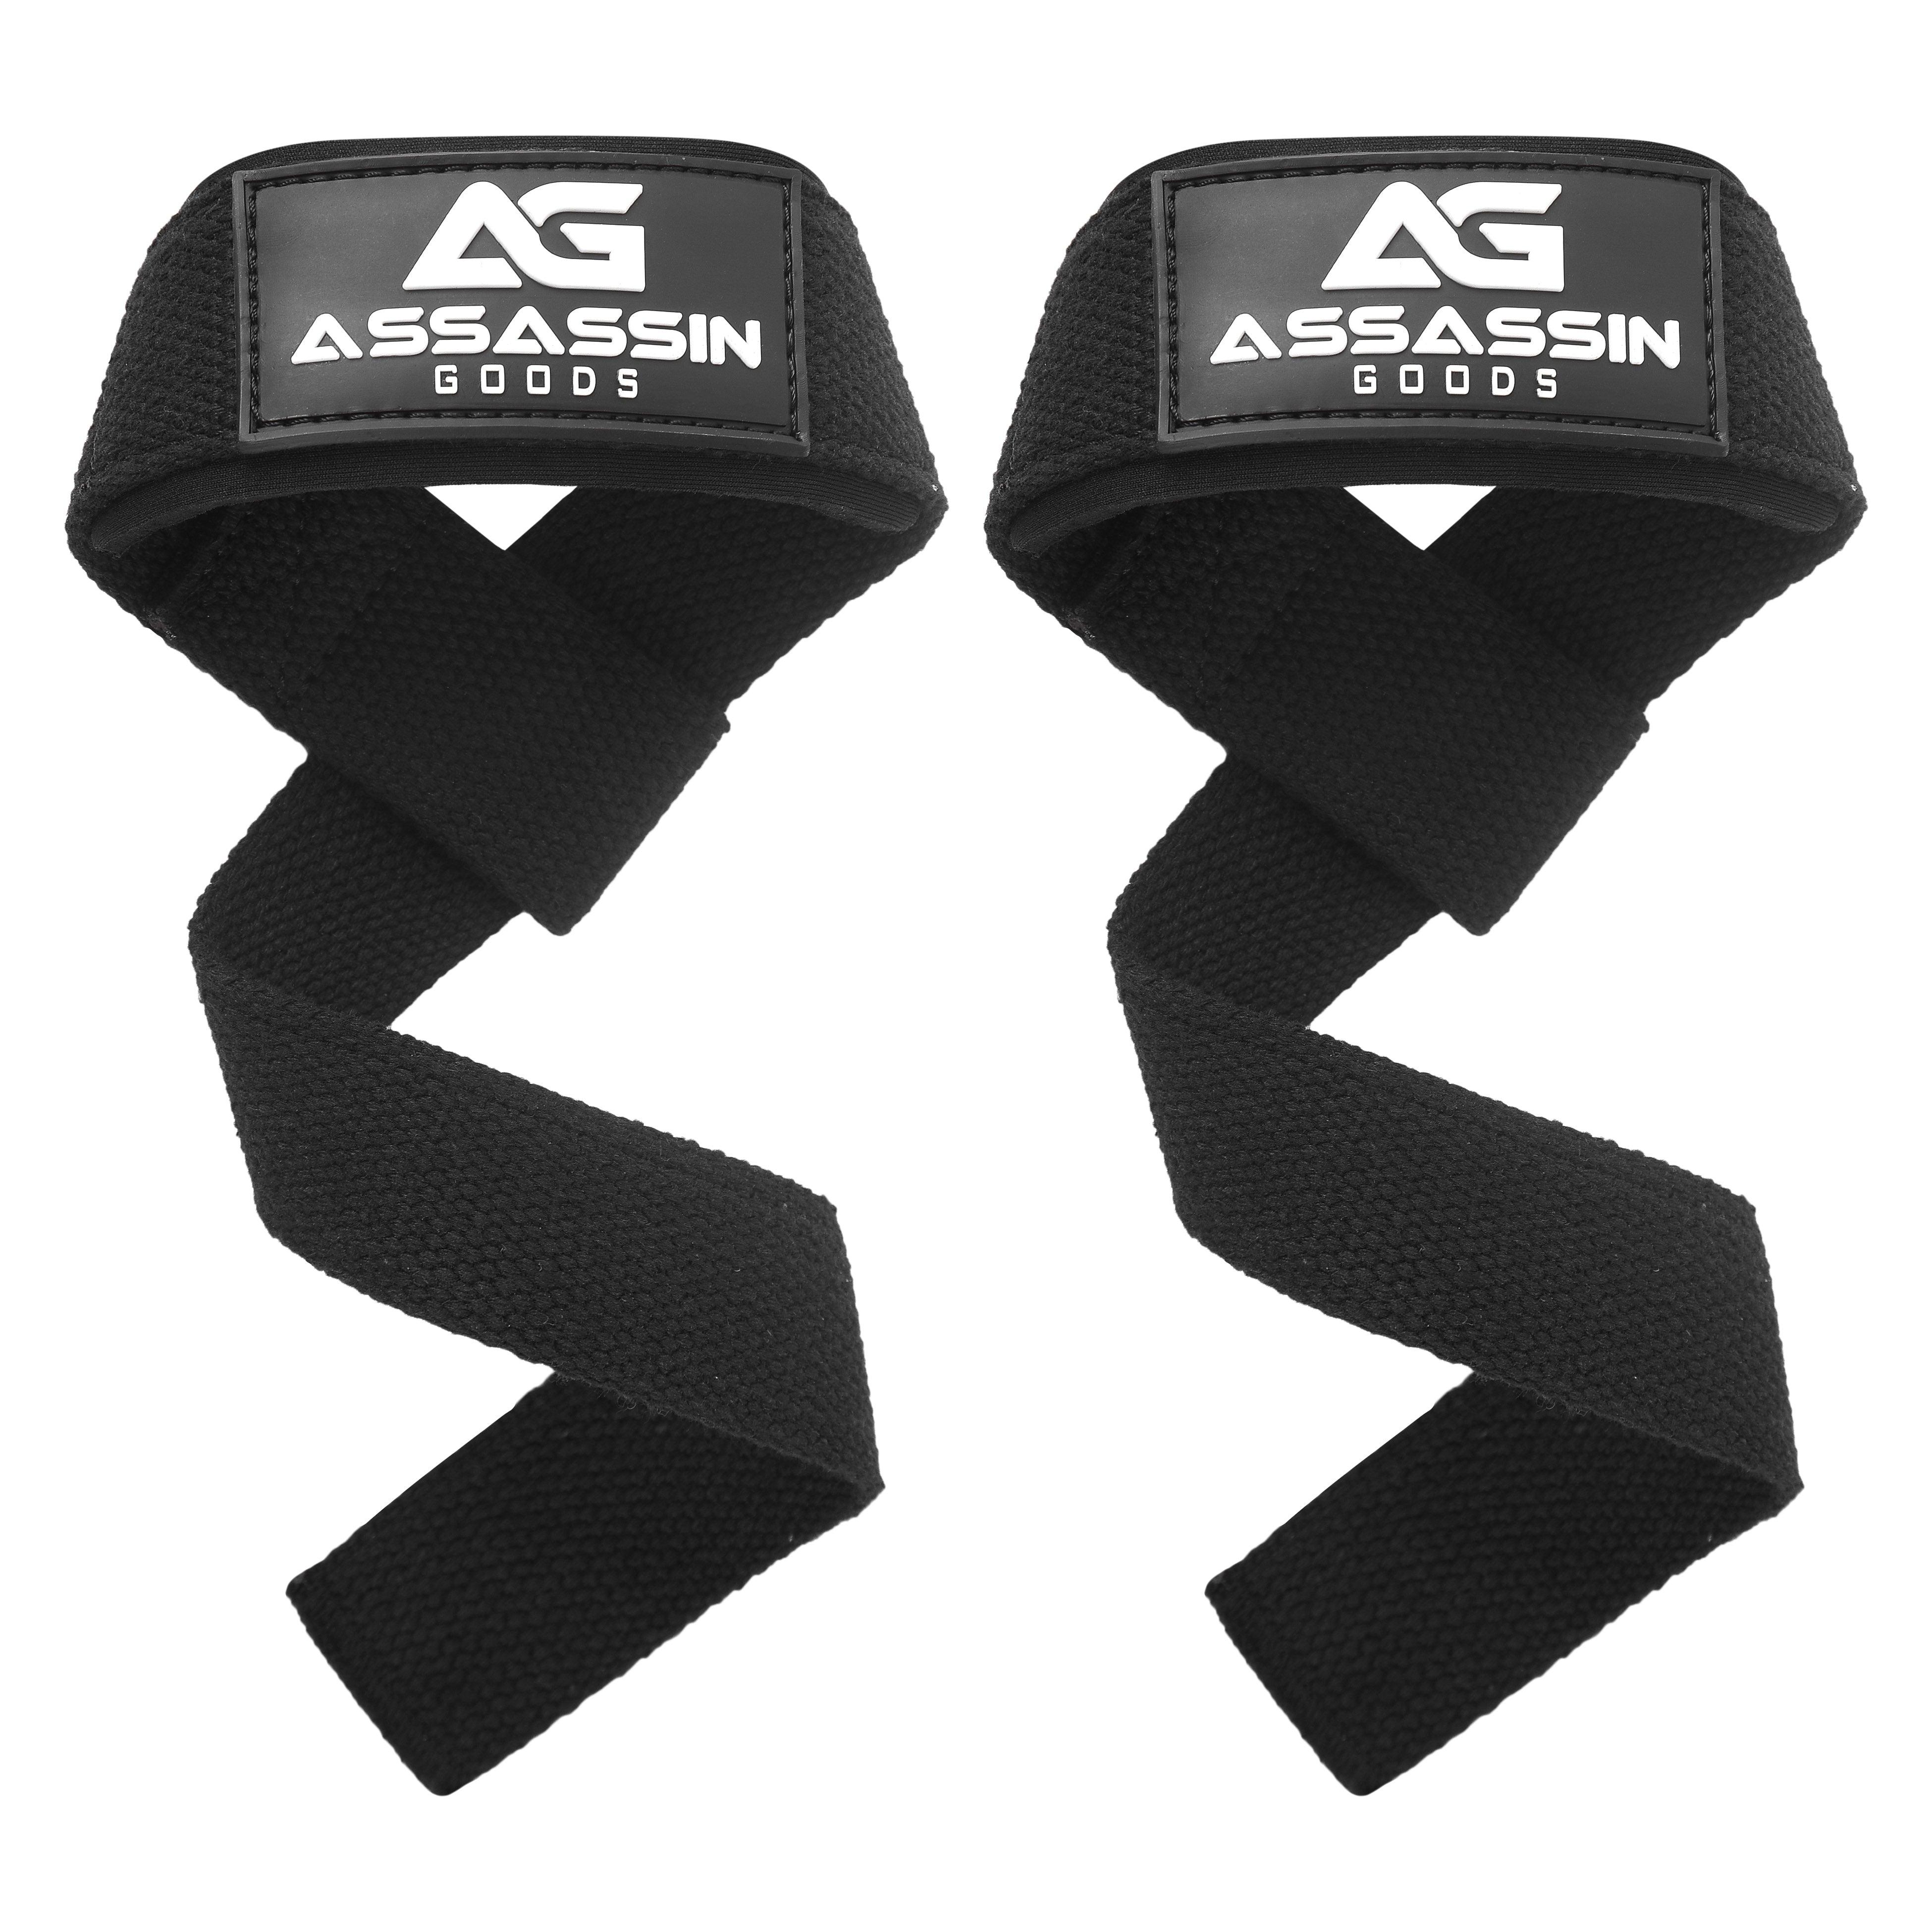 Assassin Weight Lifting Straps - Assassin Goods